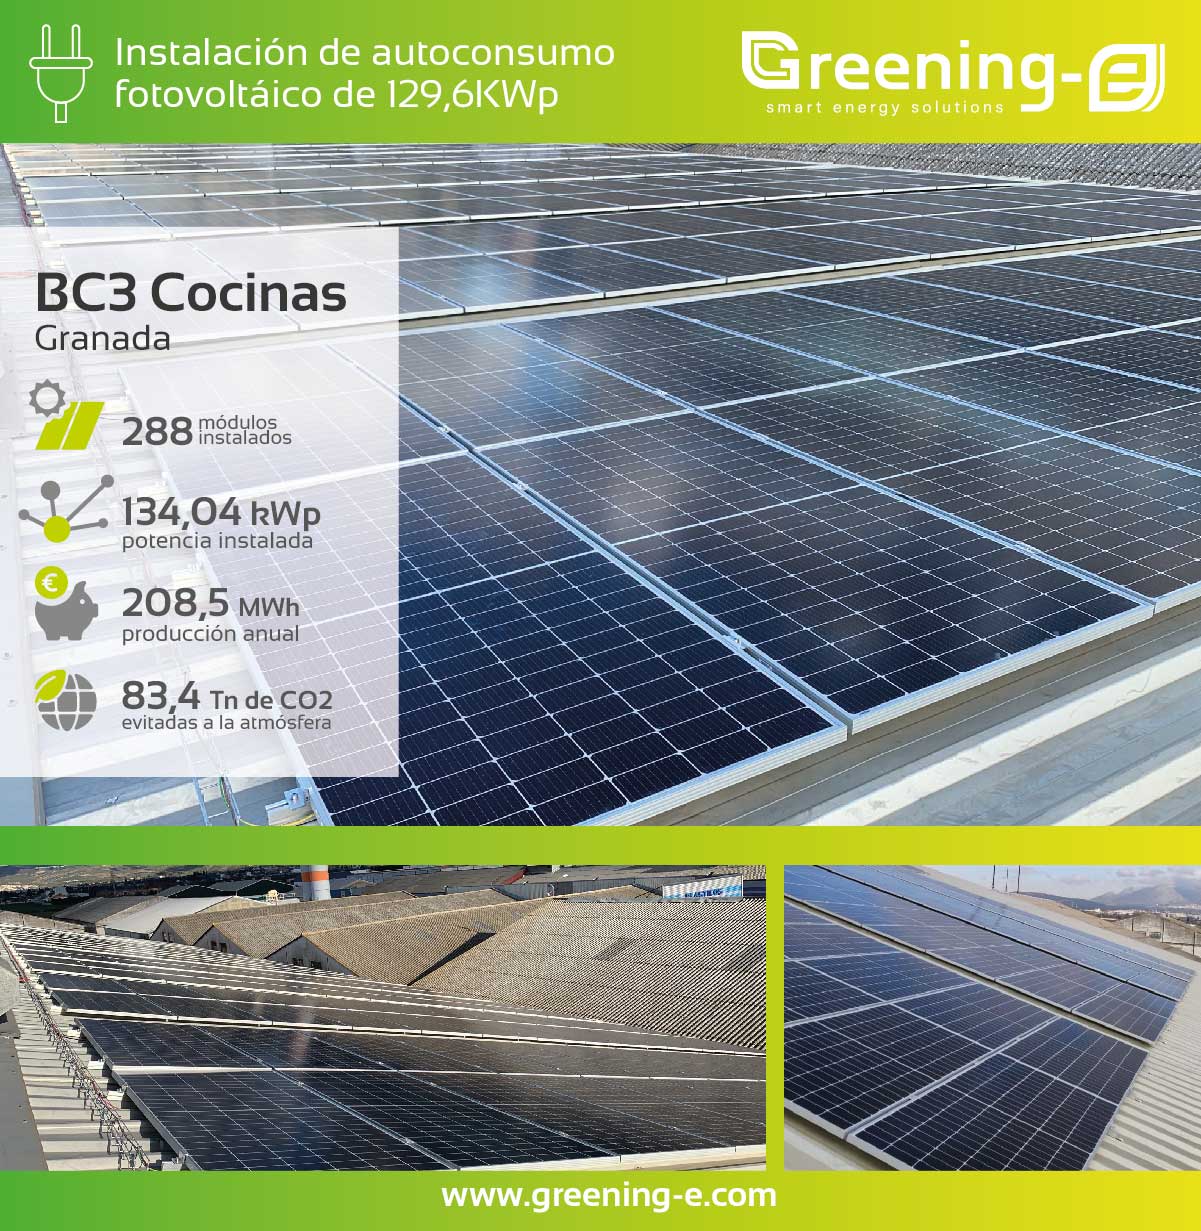 Instalaciones Greening-e Instalación de autoconsumo fotovoltaico de 131,04 kWp para BC3 Cocinas